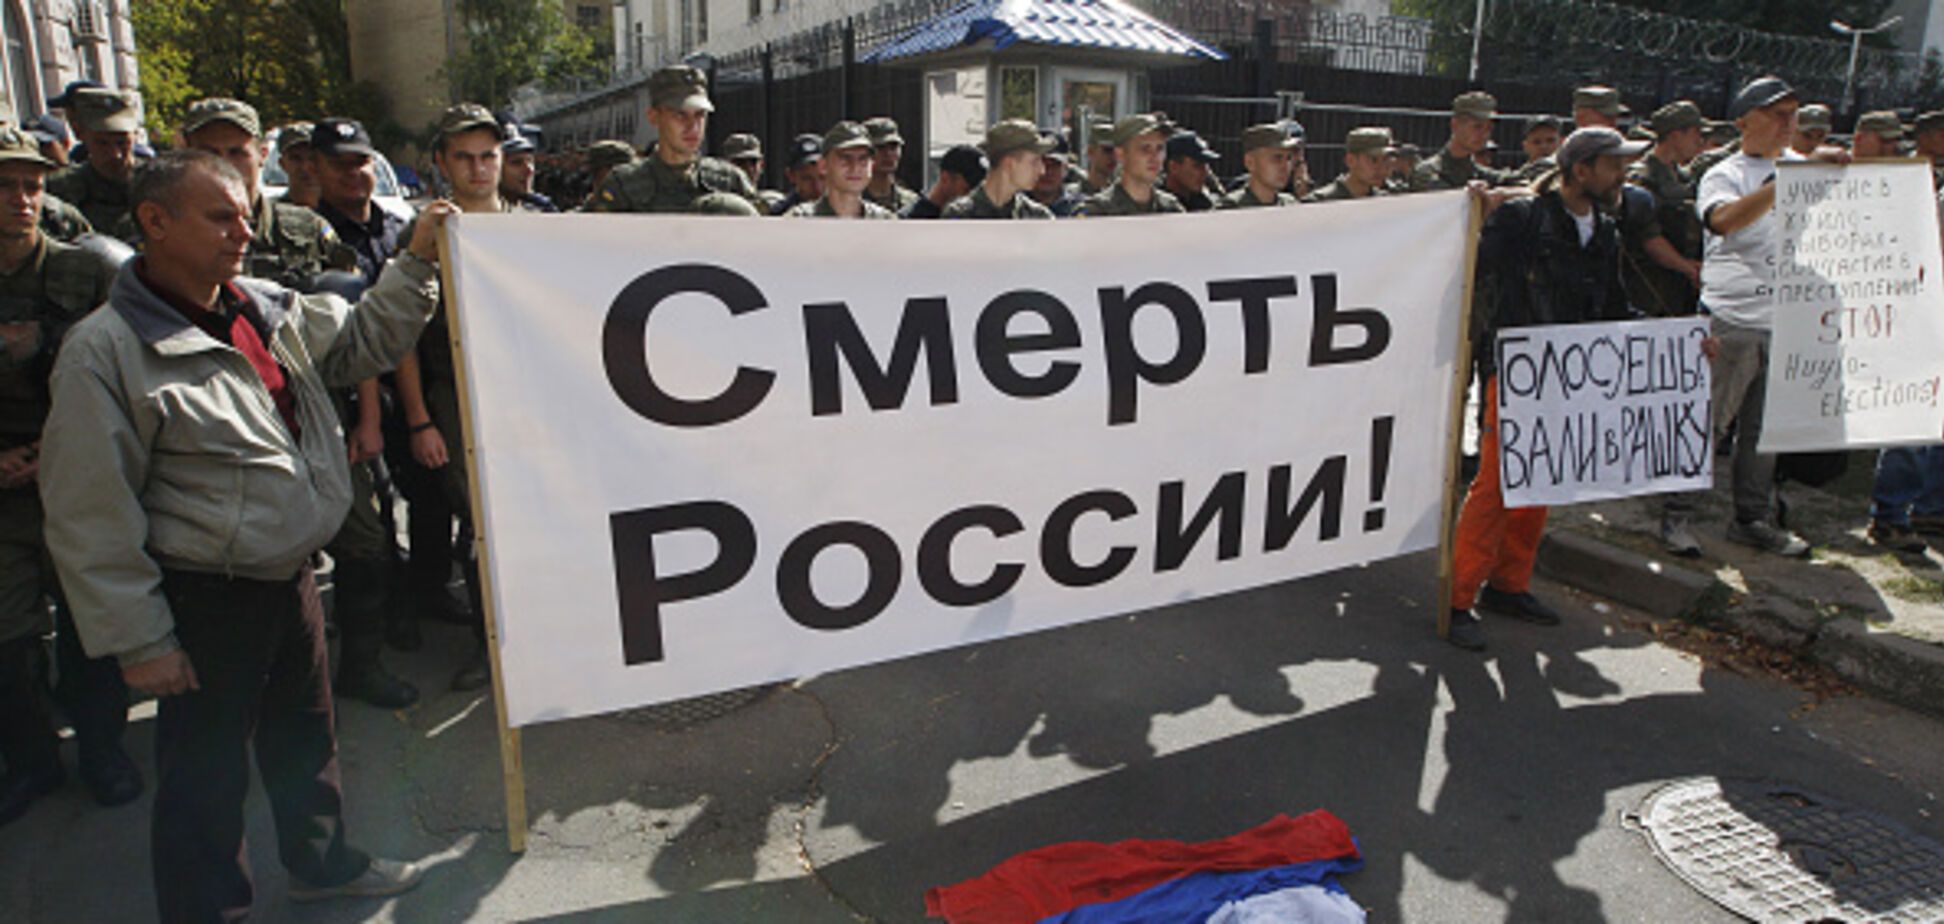 'Некрофіли!' Знущальна акція у Петербурзі розлютила росіян. Опубліковані фото